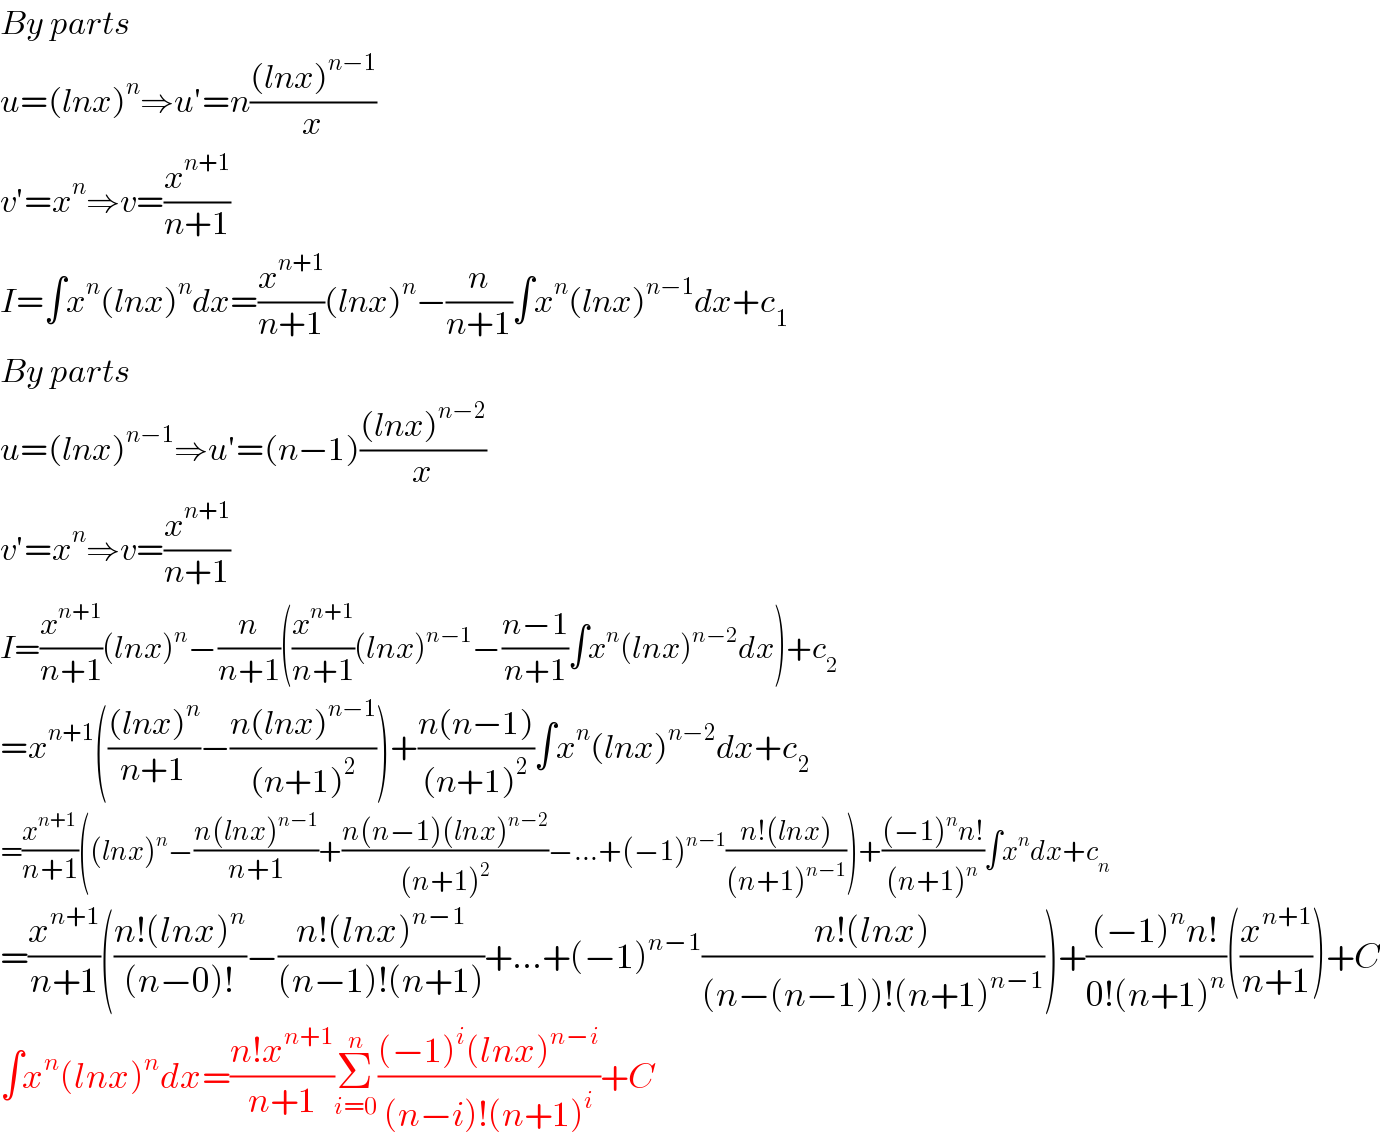 By parts  u=(lnx)^n ⇒u′=n(((lnx)^(n−1) )/x)  v′=x^n ⇒v=(x^(n+1) /(n+1))  I=∫x^n (lnx)^n dx=(x^(n+1) /(n+1))(lnx)^n −(n/(n+1))∫x^n (lnx)^(n−1) dx+c_1   By parts  u=(lnx)^(n−1) ⇒u′=(n−1)(((lnx)^(n−2) )/x)  v′=x^n ⇒v=(x^(n+1) /(n+1))  I=(x^(n+1) /(n+1))(lnx)^n −(n/(n+1))((x^(n+1) /(n+1))(lnx)^(n−1) −((n−1)/(n+1))∫x^n (lnx)^(n−2) dx)+c_2   =x^(n+1) ((((lnx)^n )/(n+1))−((n(lnx)^(n−1) )/((n+1)^2 )))+((n(n−1))/((n+1)^2 ))∫x^n (lnx)^(n−2) dx+c_2   =(x^(n+1) /(n+1))((lnx)^n −((n(lnx)^(n−1) )/(n+1))+((n(n−1)(lnx)^(n−2) )/((n+1)^2 ))−...+(−1)^(n−1) ((n!(lnx))/((n+1)^(n−1) )))+(((−1)^n n!)/((n+1)^n ))∫x^n dx+c_n   =(x^(n+1) /(n+1))(((n!(lnx)^n )/((n−0)!))−((n!(lnx)^(n−1) )/((n−1)!(n+1)))+...+(−1)^(n−1) ((n!(lnx))/((n−(n−1))!(n+1)^(n−1) )))+(((−1)^n n!)/(0!(n+1)^n ))((x^(n+1) /(n+1)))+C  ∫x^n (lnx)^n dx=((n!x^(n+1) )/(n+1))Σ_(i=0) ^n (((−1)^i (lnx)^(n−i) )/((n−i)!(n+1)^i ))+C  